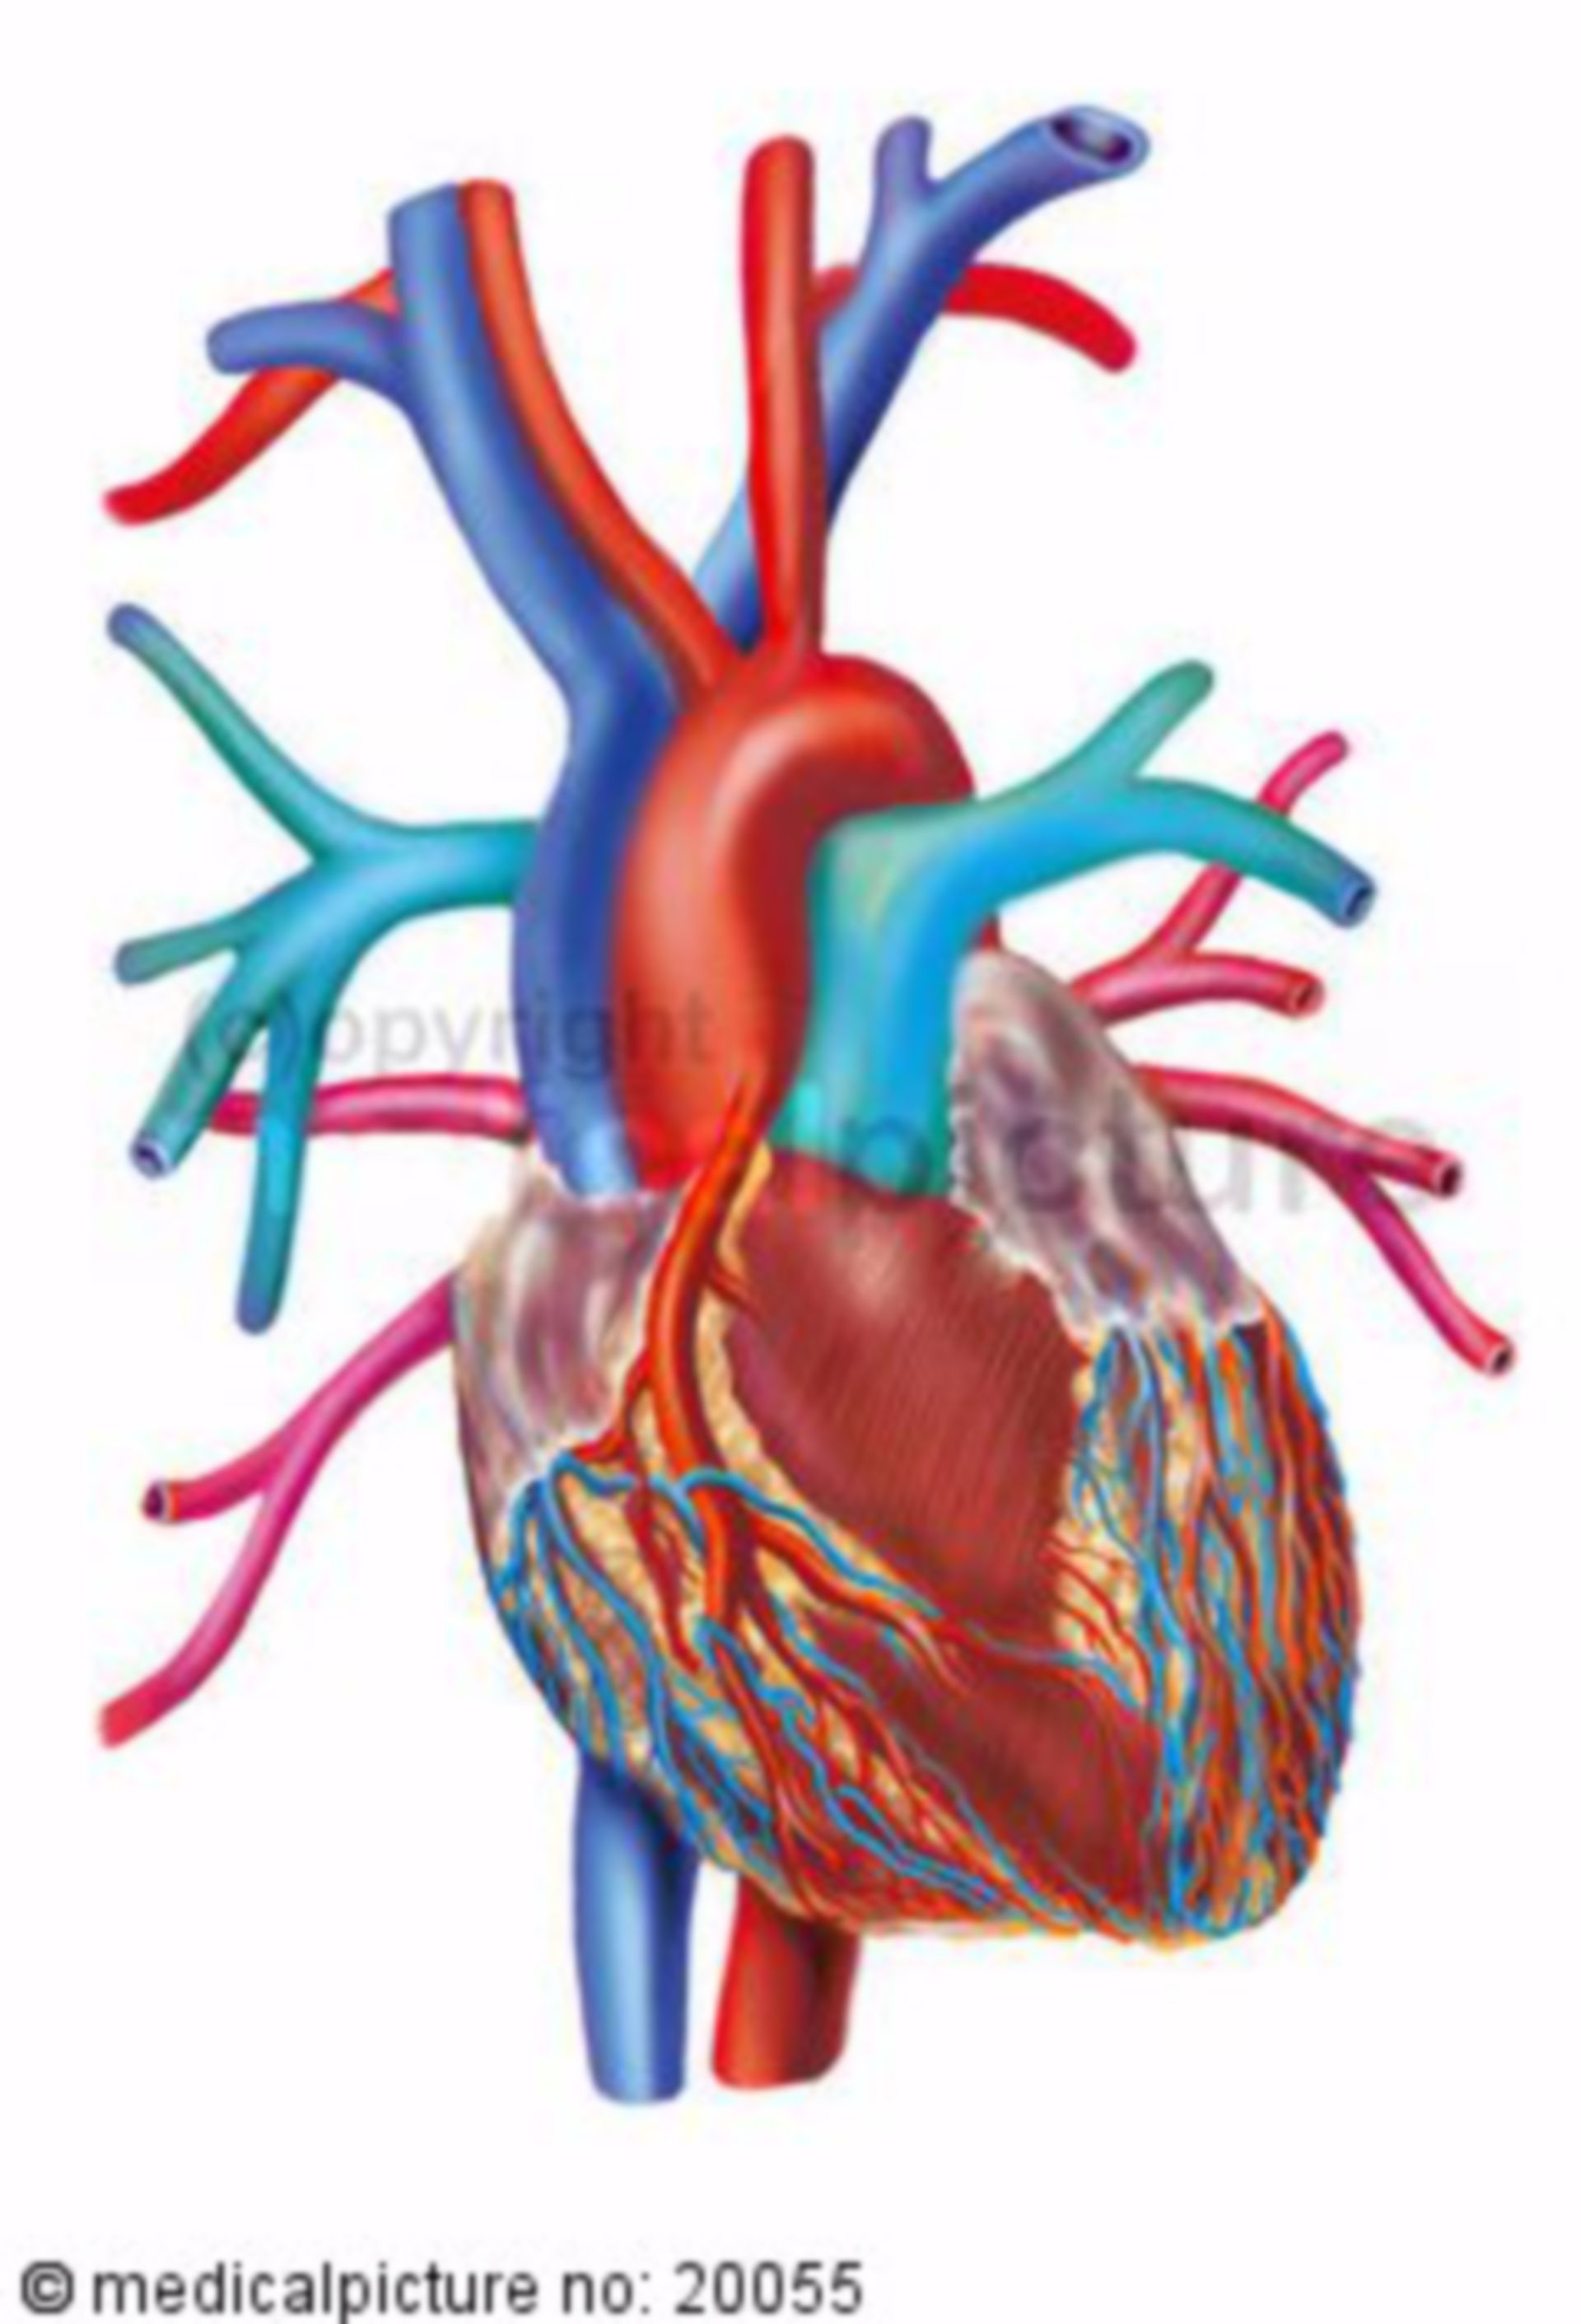 Herz mit Zufluss-, Ausflussbahnen und Herzkranzgefäßen